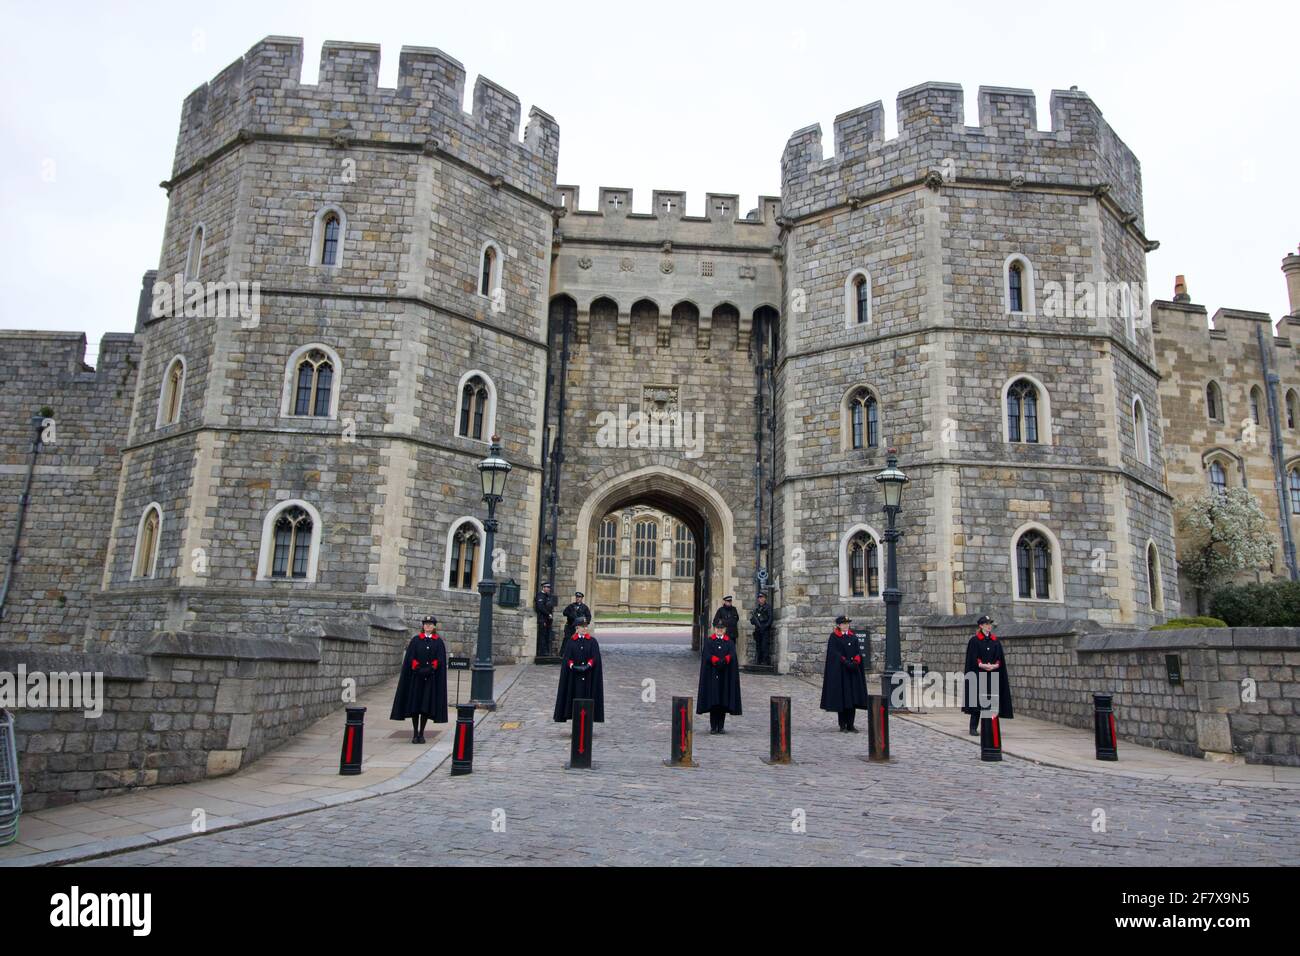 10 de abril de 2021 - Windsor Reino Unido: Personal de luto frente a la entrada principal del Castillo de Windsor tras la muerte del Príncipe Felipe de S.A.R. Fotografías de alta calidad Foto de stock